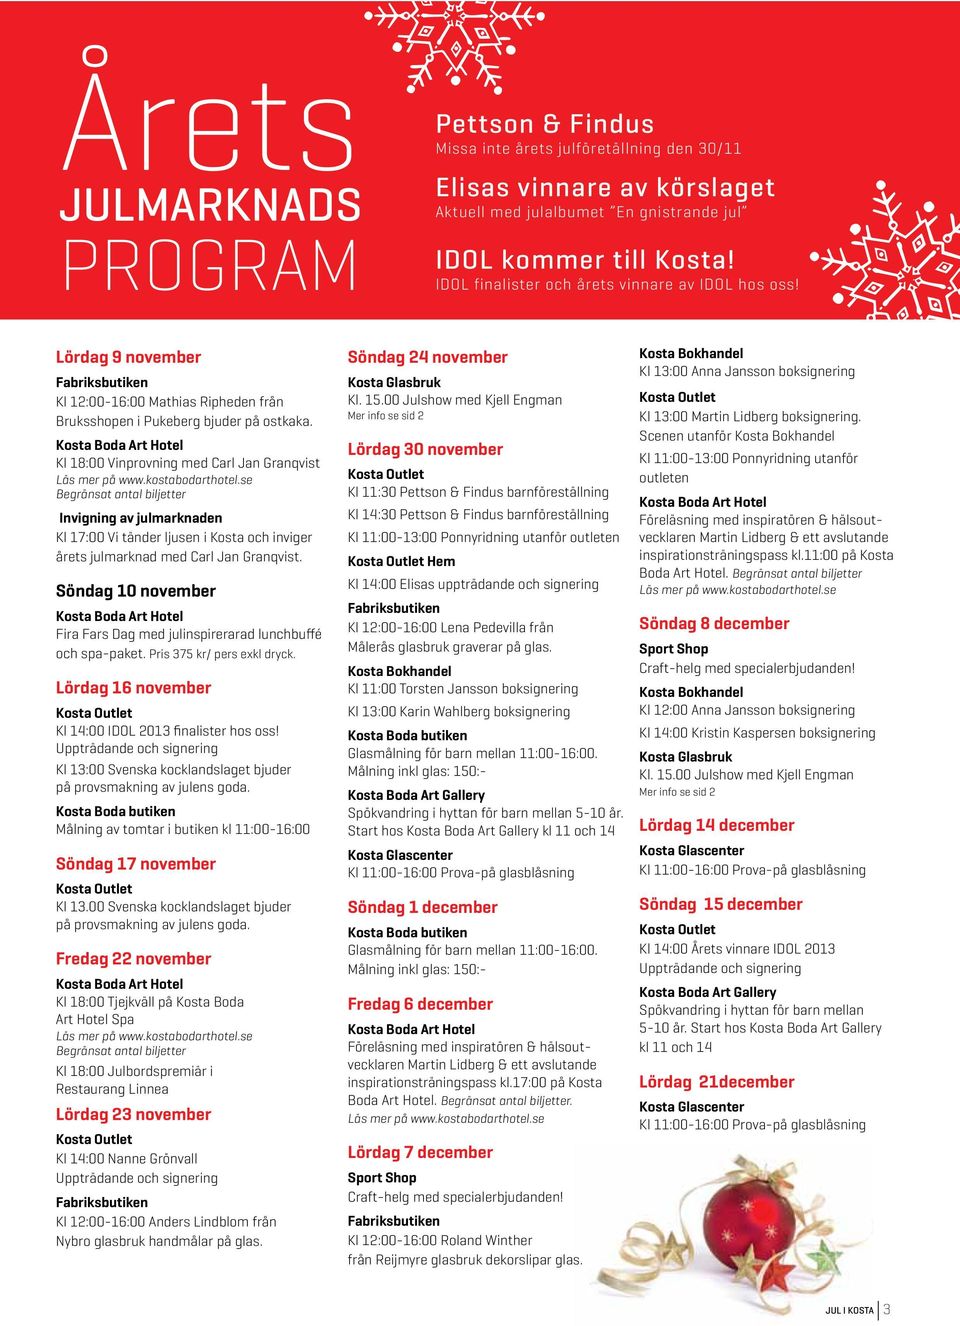 se Begränsat antal biljetter Invigning av julmarknaden Kl 17:00 Vi tänder ljusen i Kosta och inviger årets julmarknad med Carl Jan Granqvist.